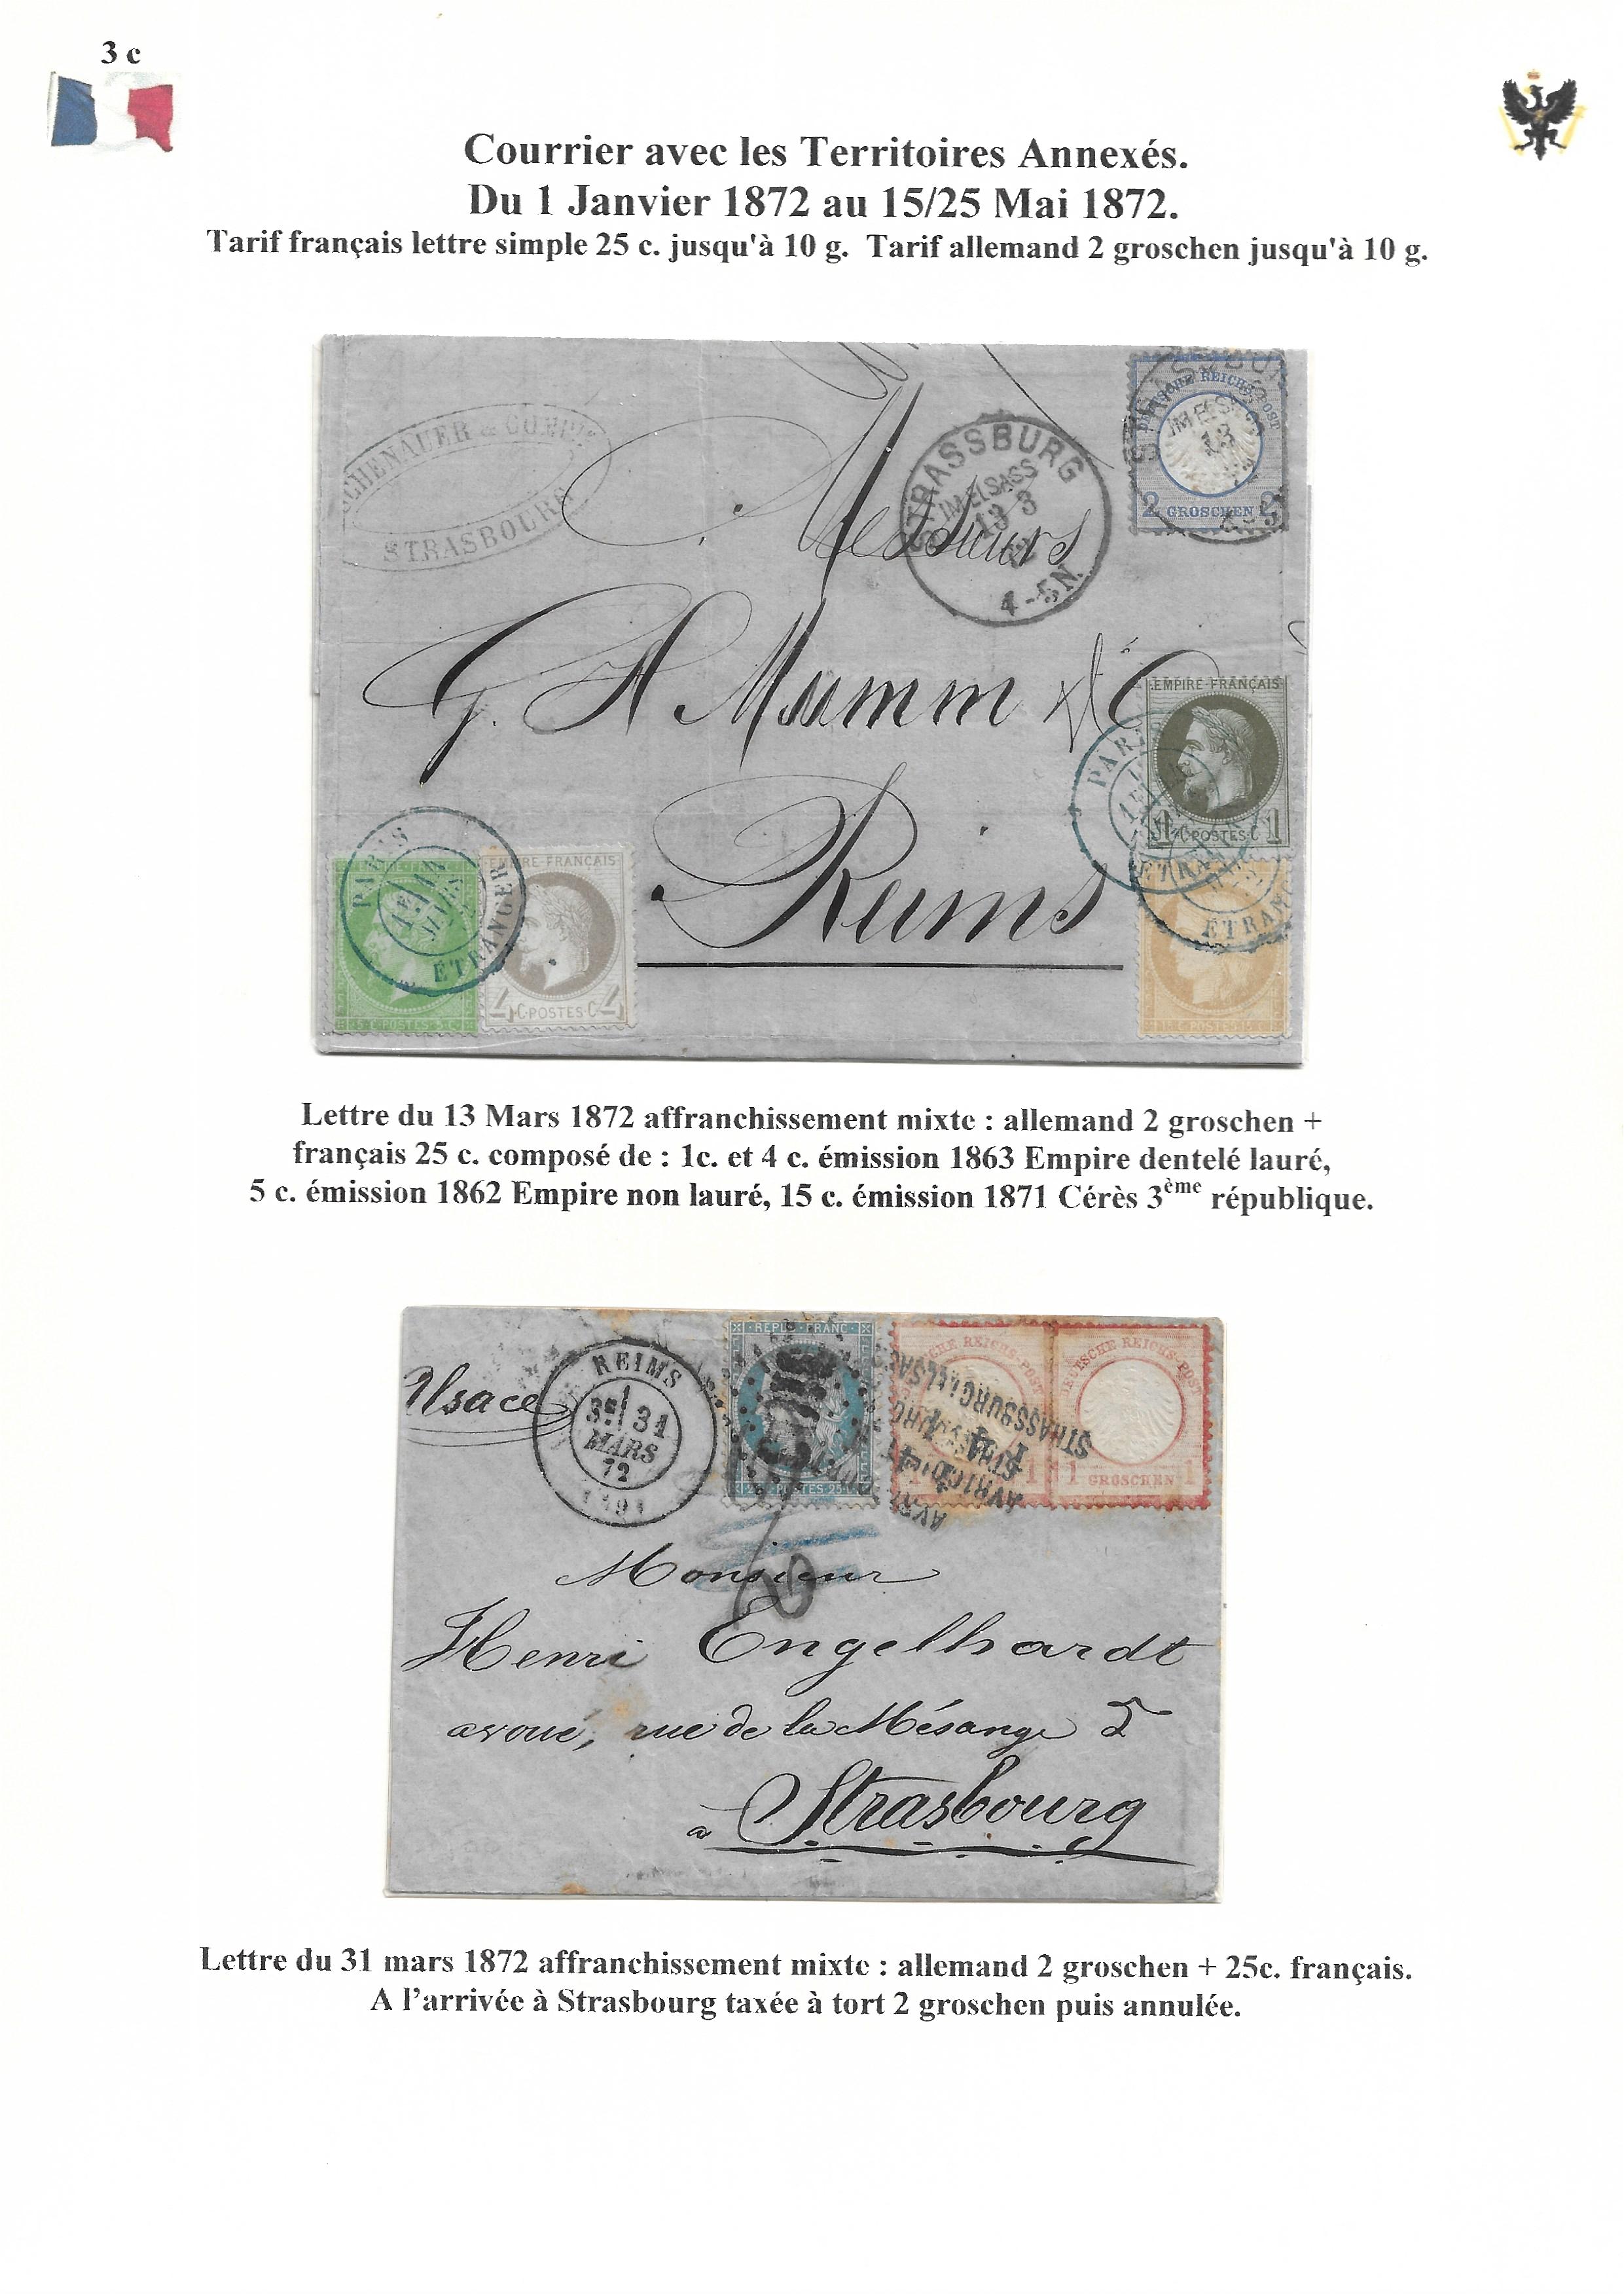 Occupation Prussienne dans la Marne 1870-1872 : Cons��quences sur les relations postales p. 42